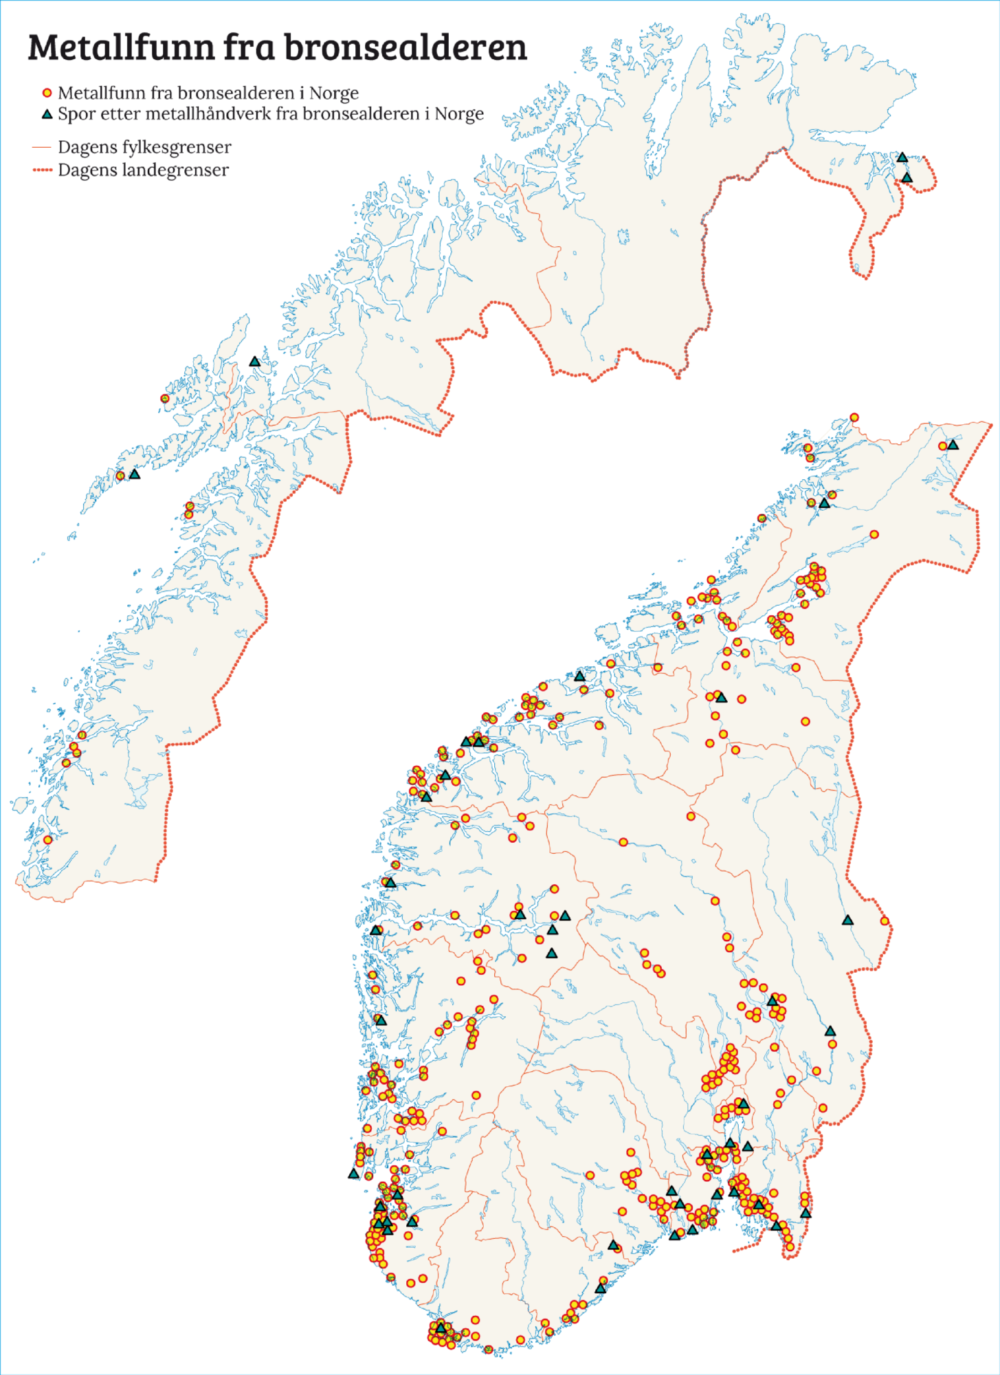 Kart over metallfunn og støpefunn i Norge. Kartet viser fylkesgrensene før 2018. © Norgeshistorie.no (https://www.norgeshistorie.no/bronsealder/teknologi-og-okonomi/0307-det-forste-metallet.html)